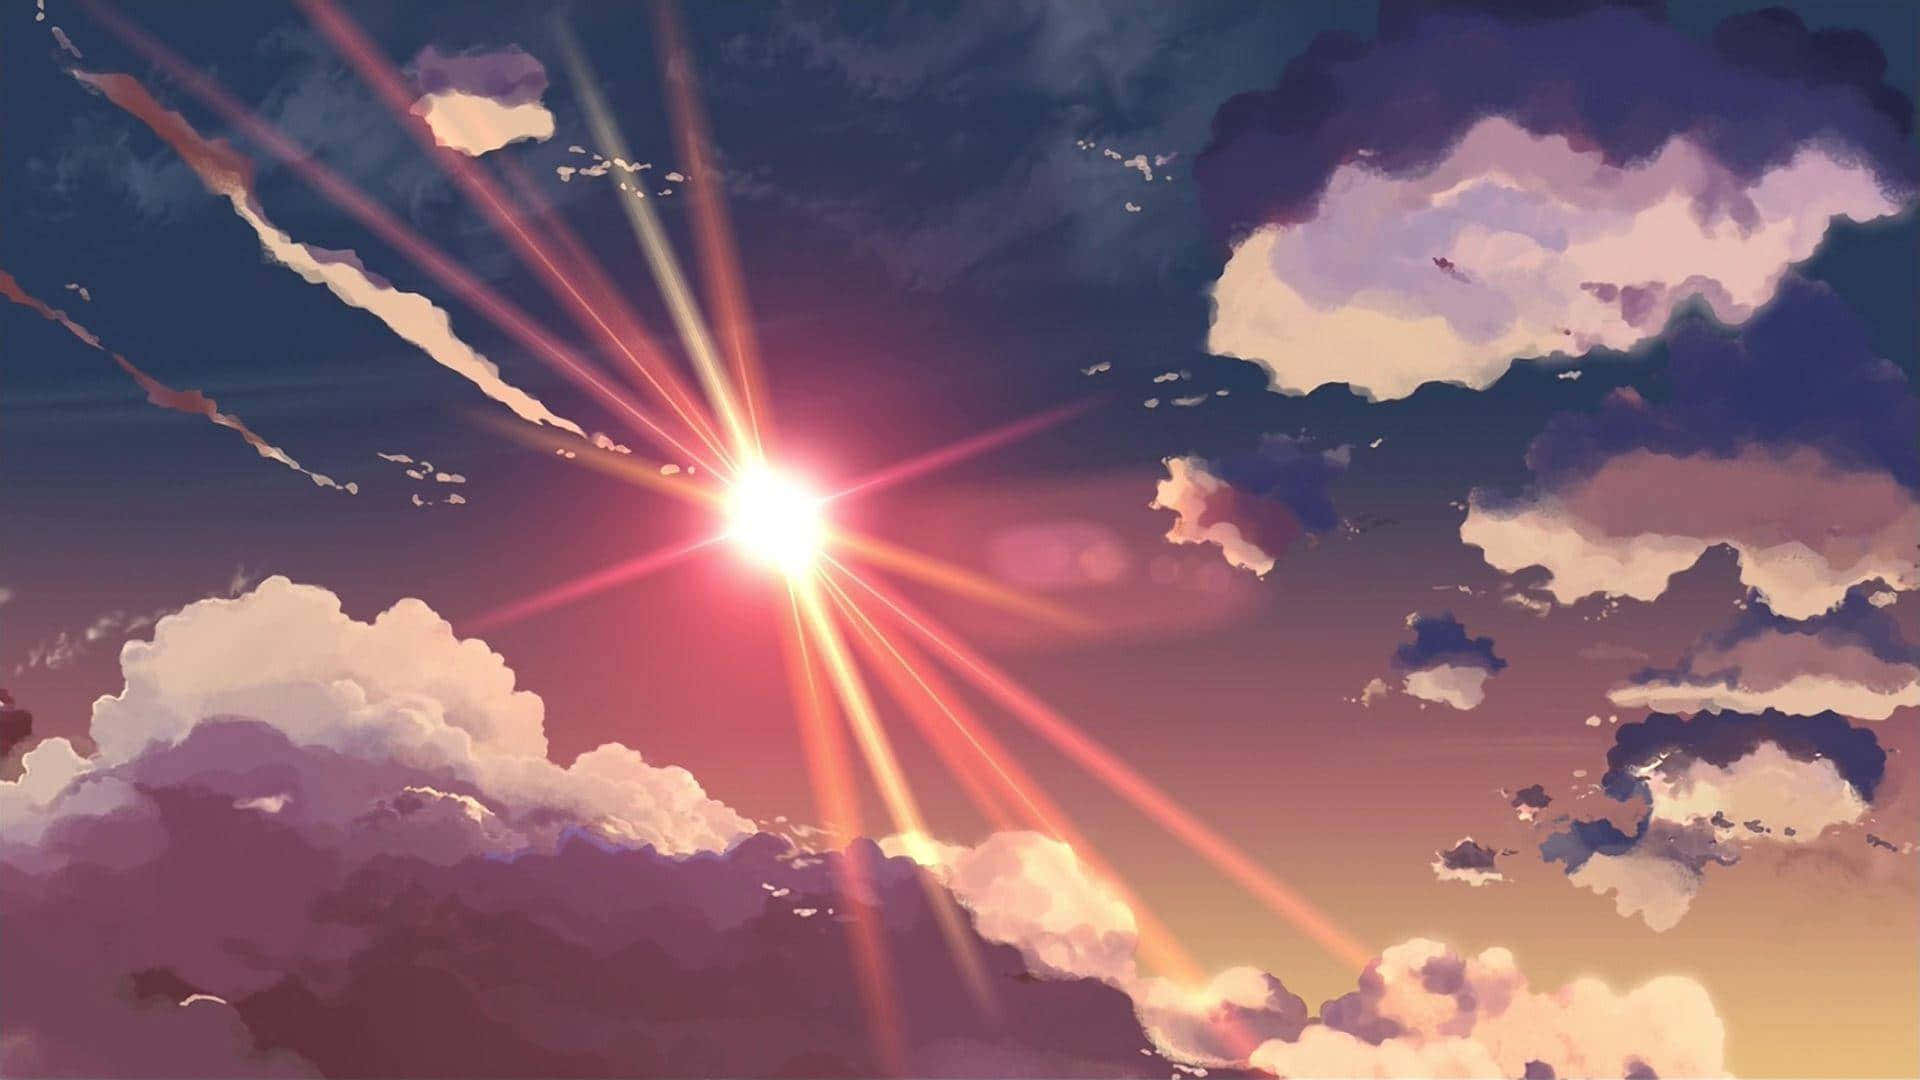 Udforsk den smukke kunst fra Studio Ghibli og opdag den vidunderlige verden af fantasi. Wallpaper